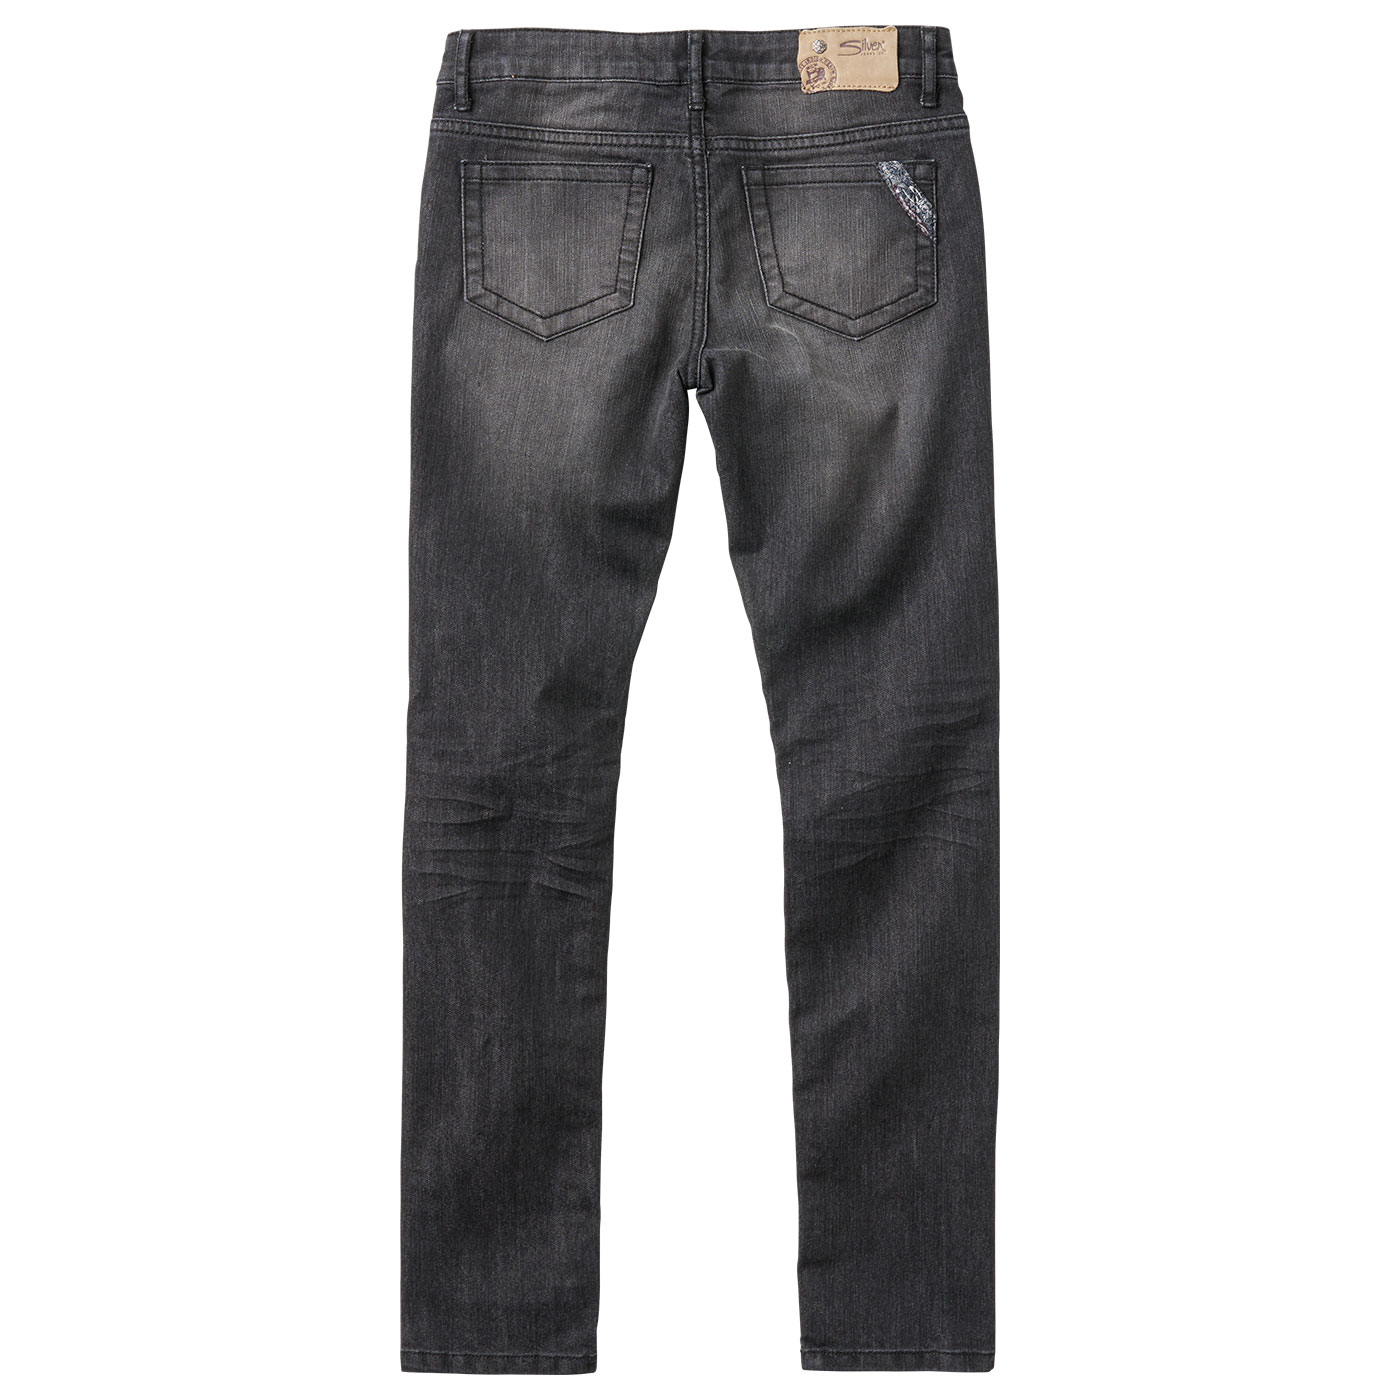 Jegging Fit Denim - Silver Jeans US